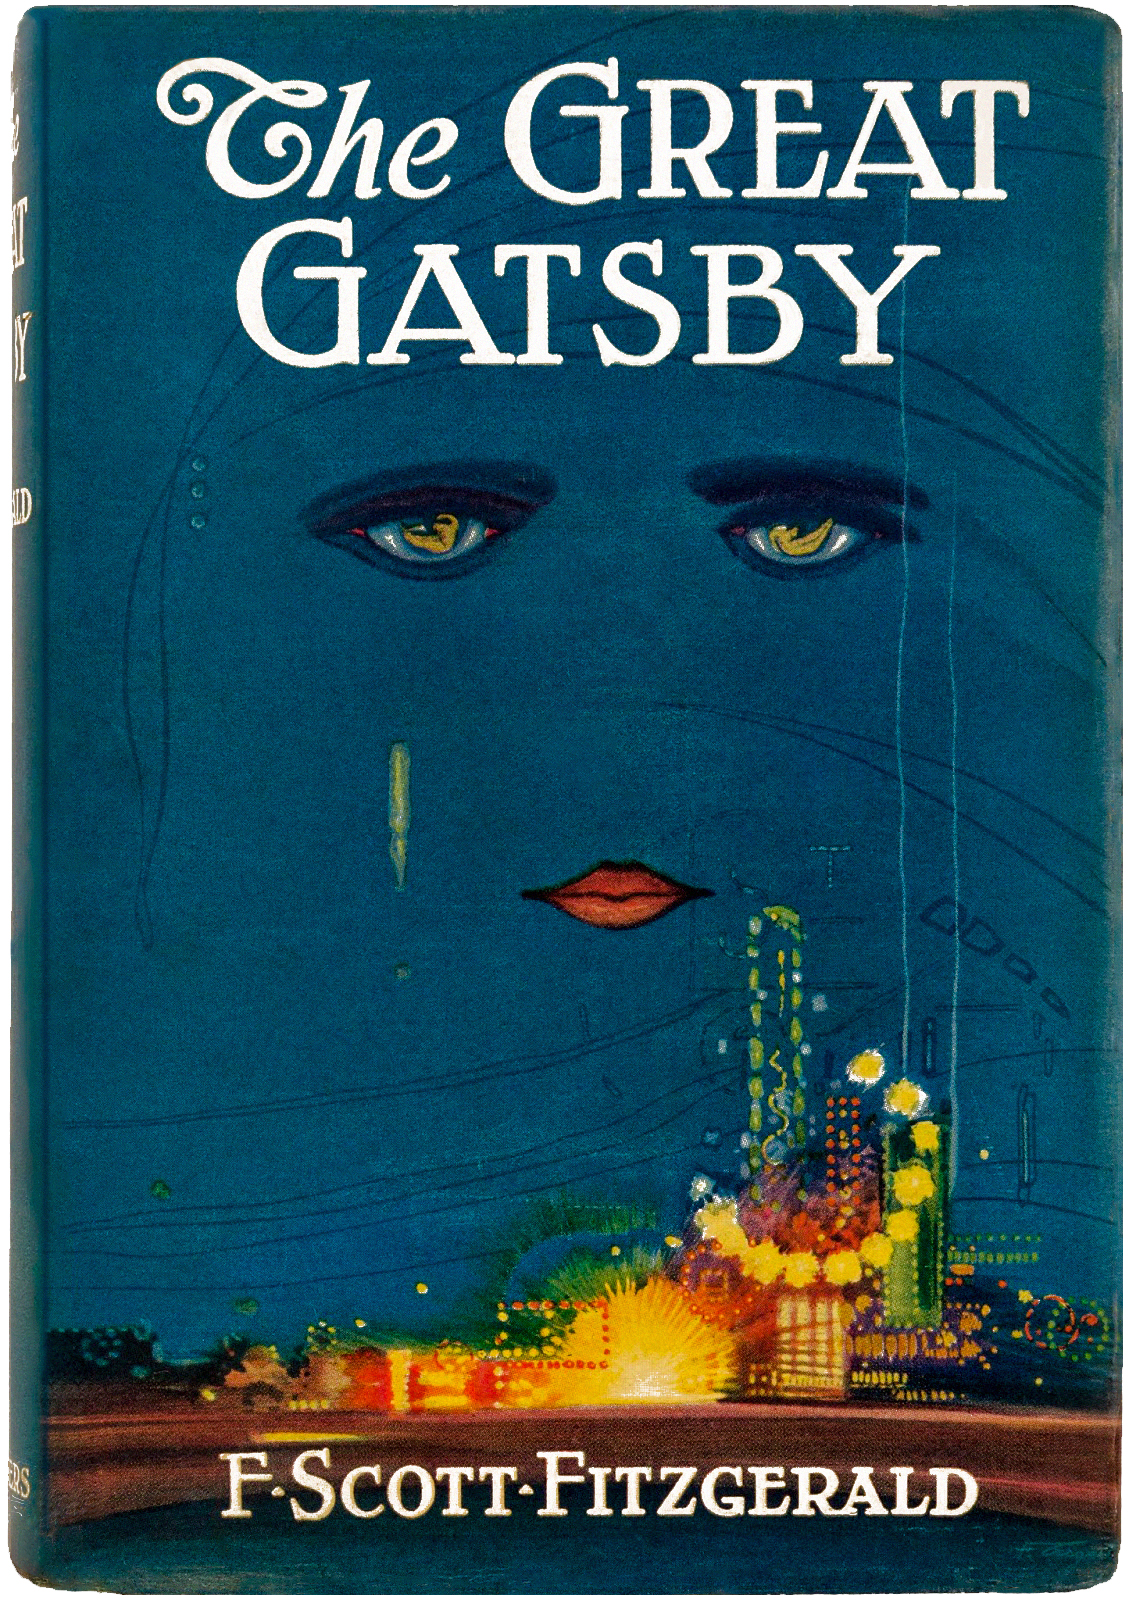 Great Gatsby - Wikipedia